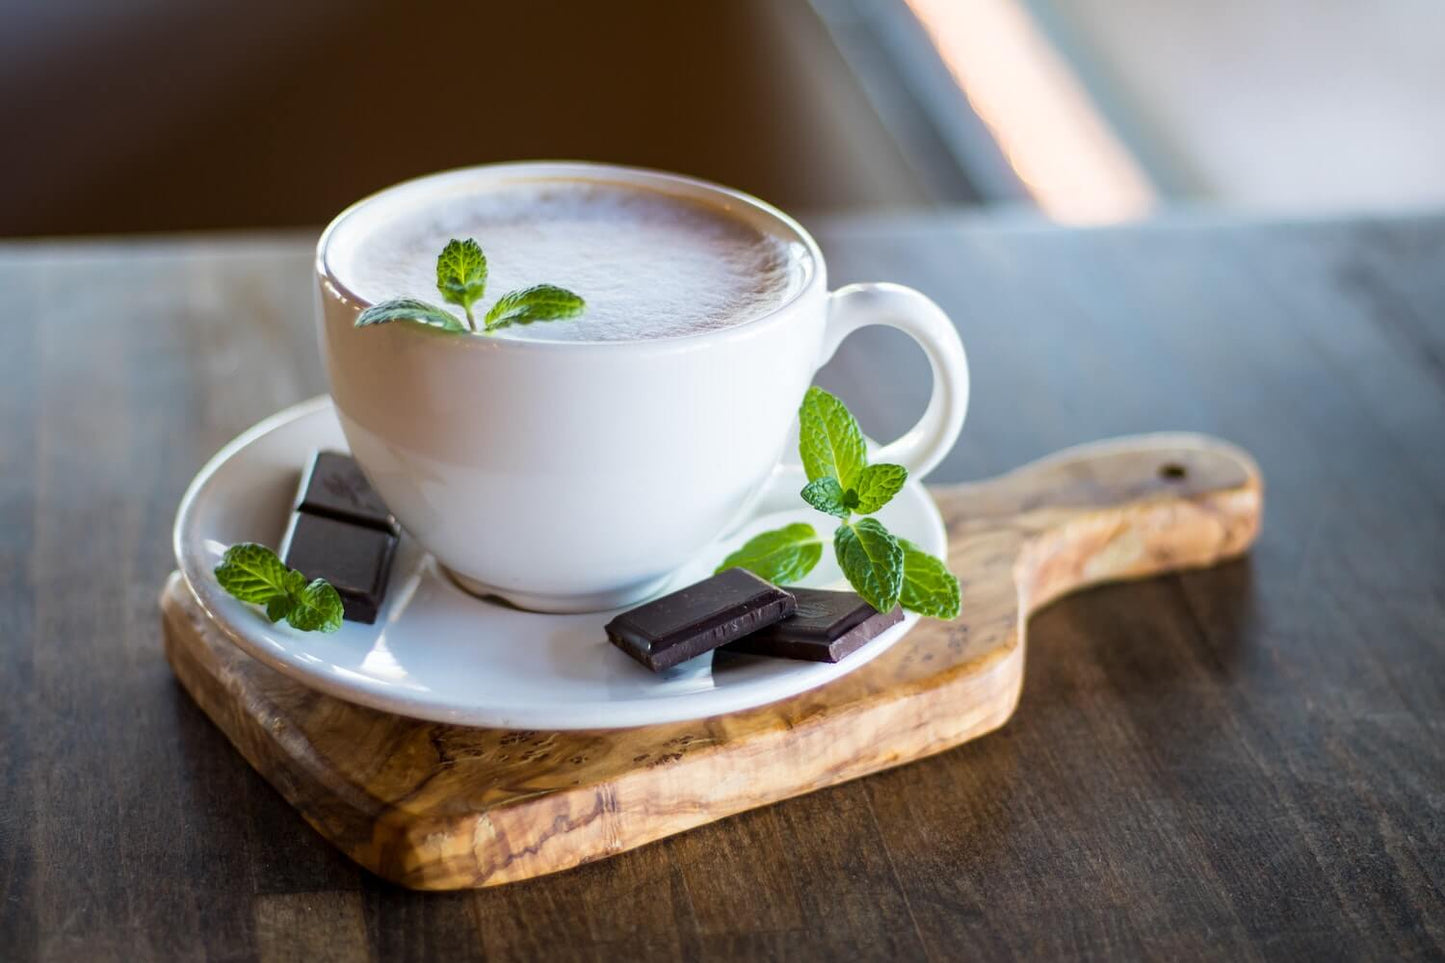 Une tasse de cacao à la menthe poivrée faite de thé à la menthe poivrée et de cacao de qualité cérémoniale.